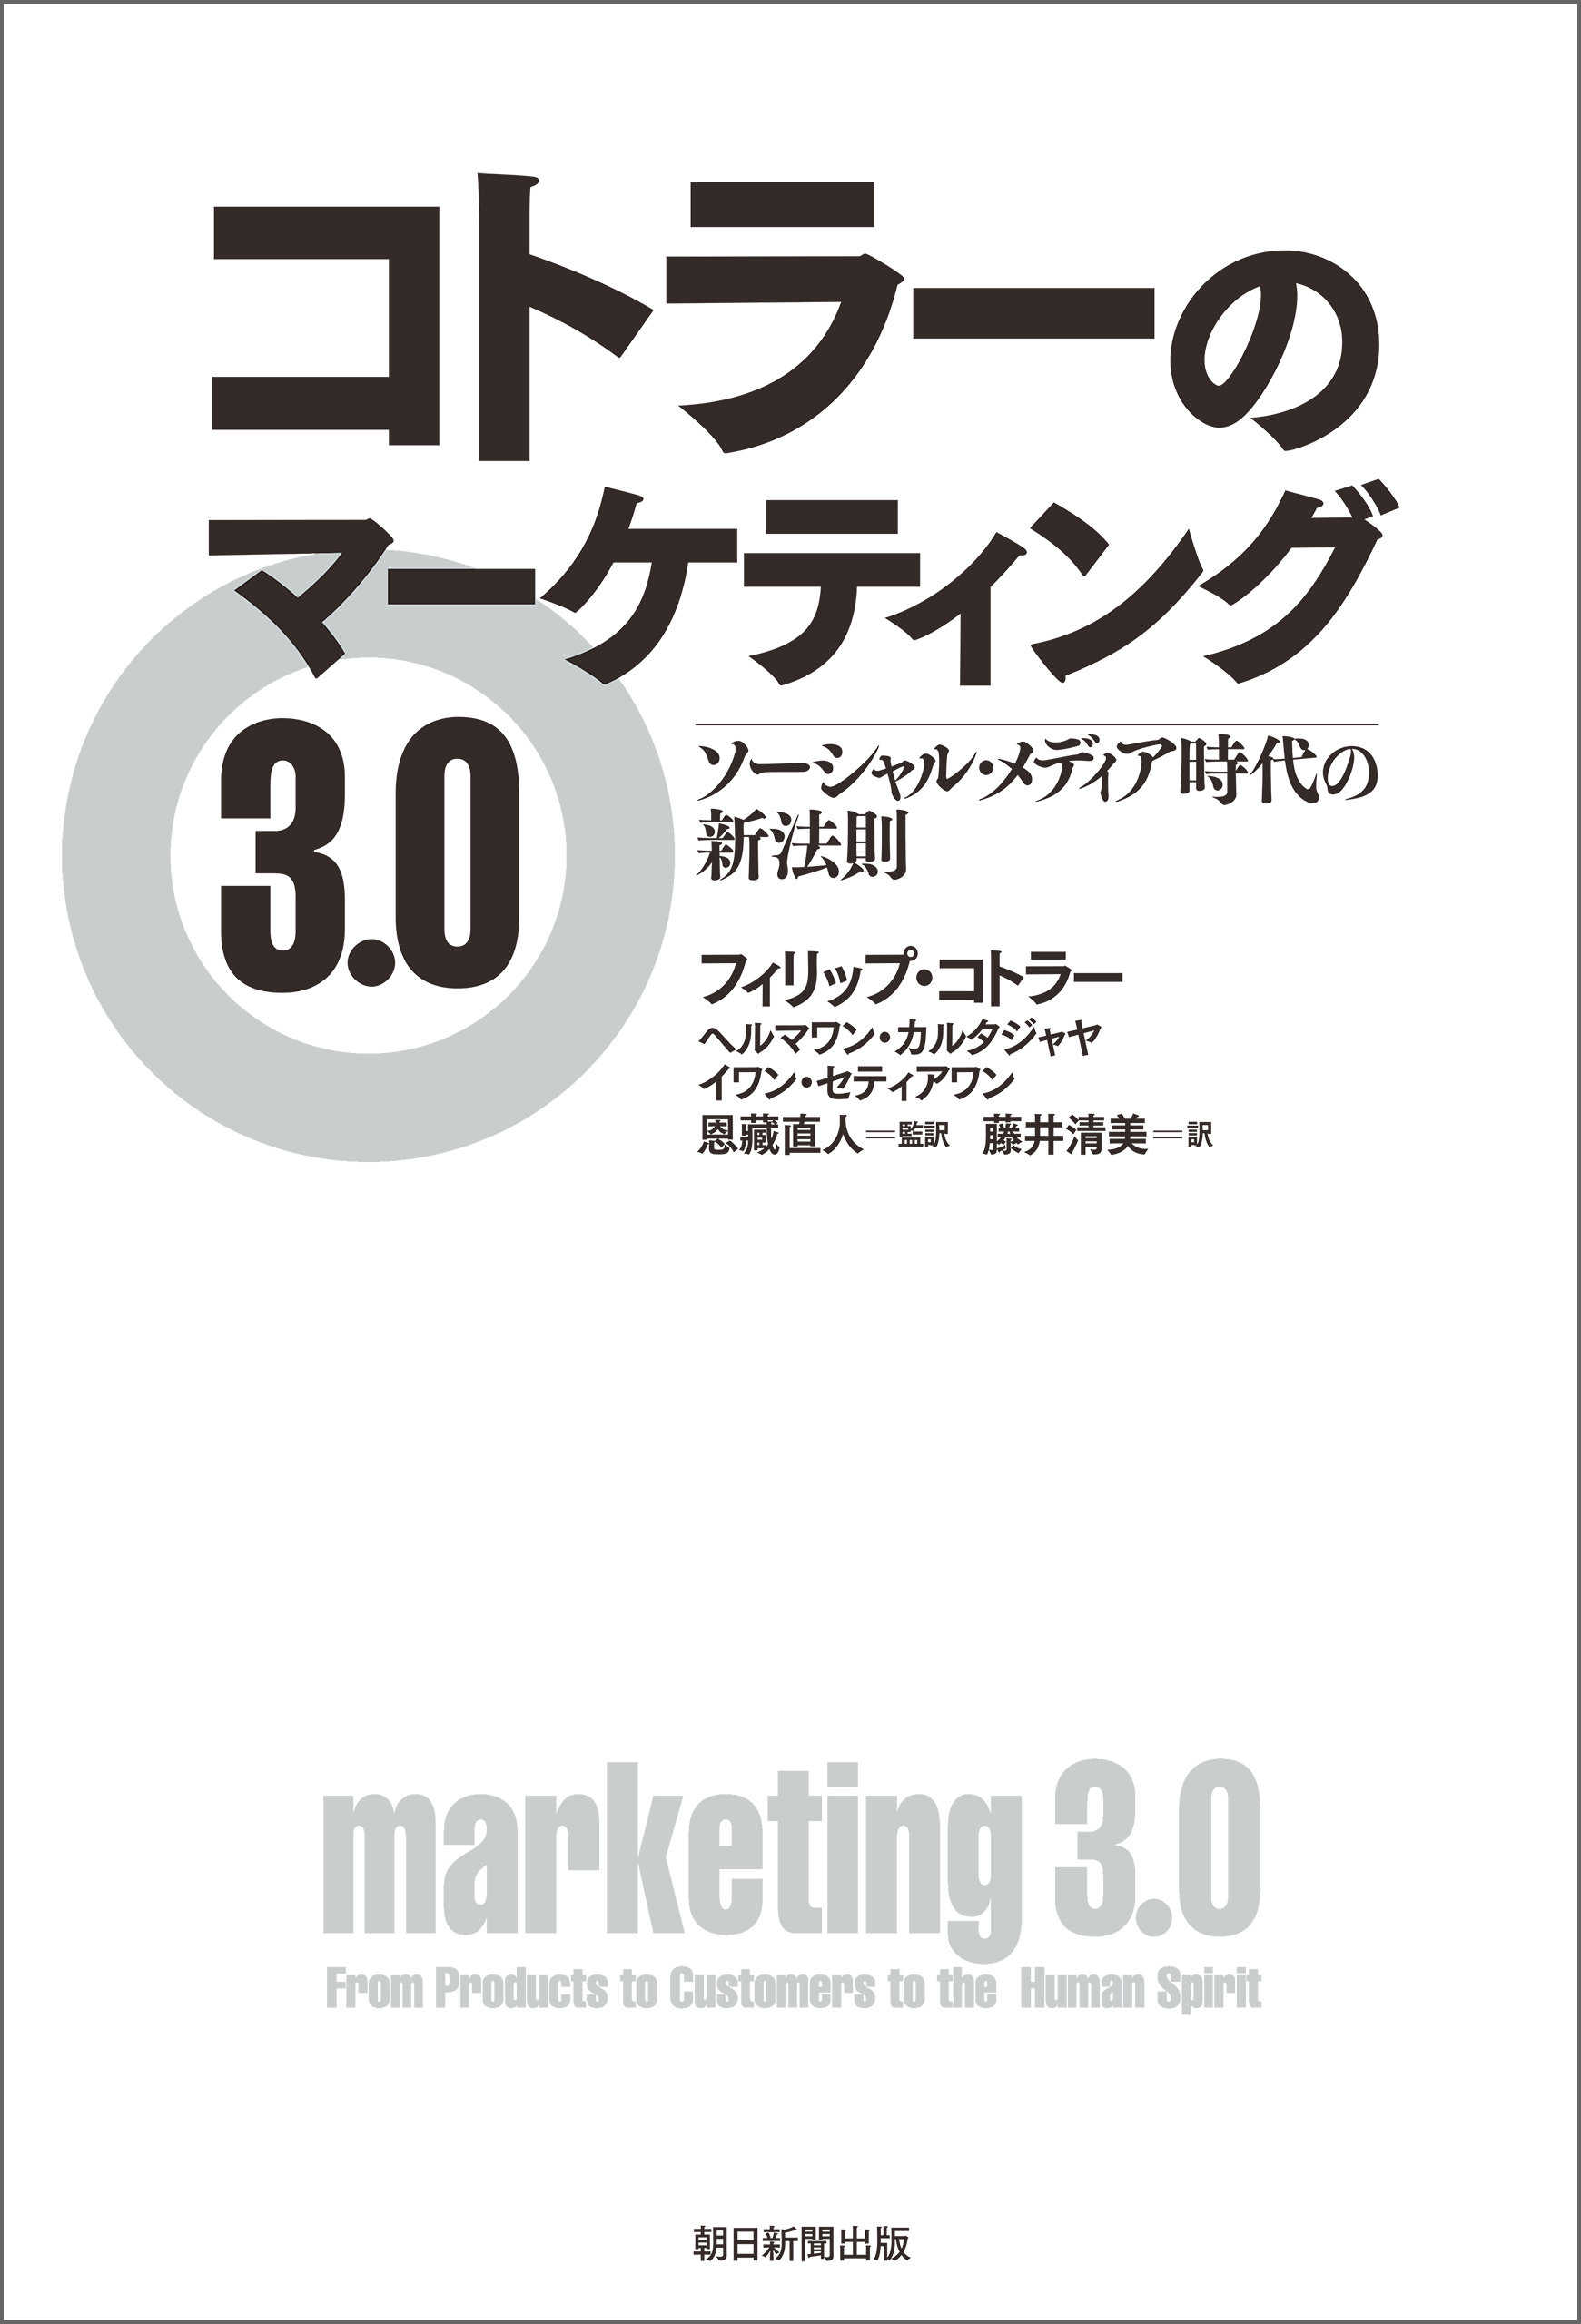 コトラーのマーケティング3.0 ソーシャル・メディア時代の新法則(書籍) - 電子書籍 | U-NEXT 初回600円分無料